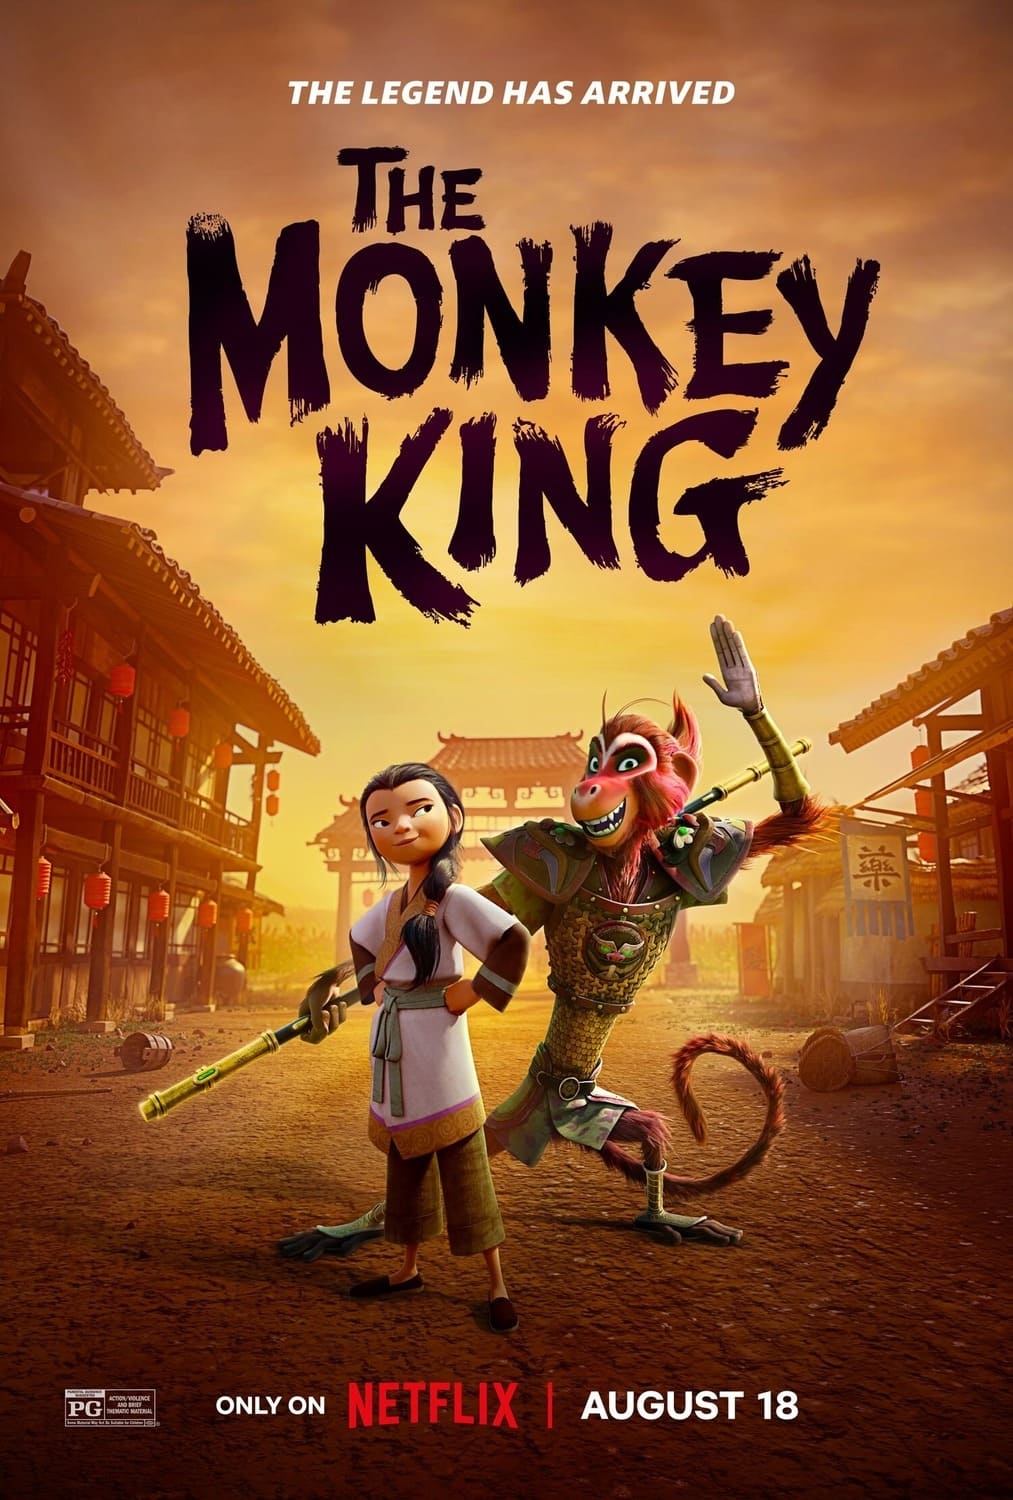 Auf dem Plakat ist der Affenkönig, welcher grinsend seine Hand zum Gruß hebt, mit seiner eher ernst dreinblickenden Assistentin Lin zu sehen - The Monkey King